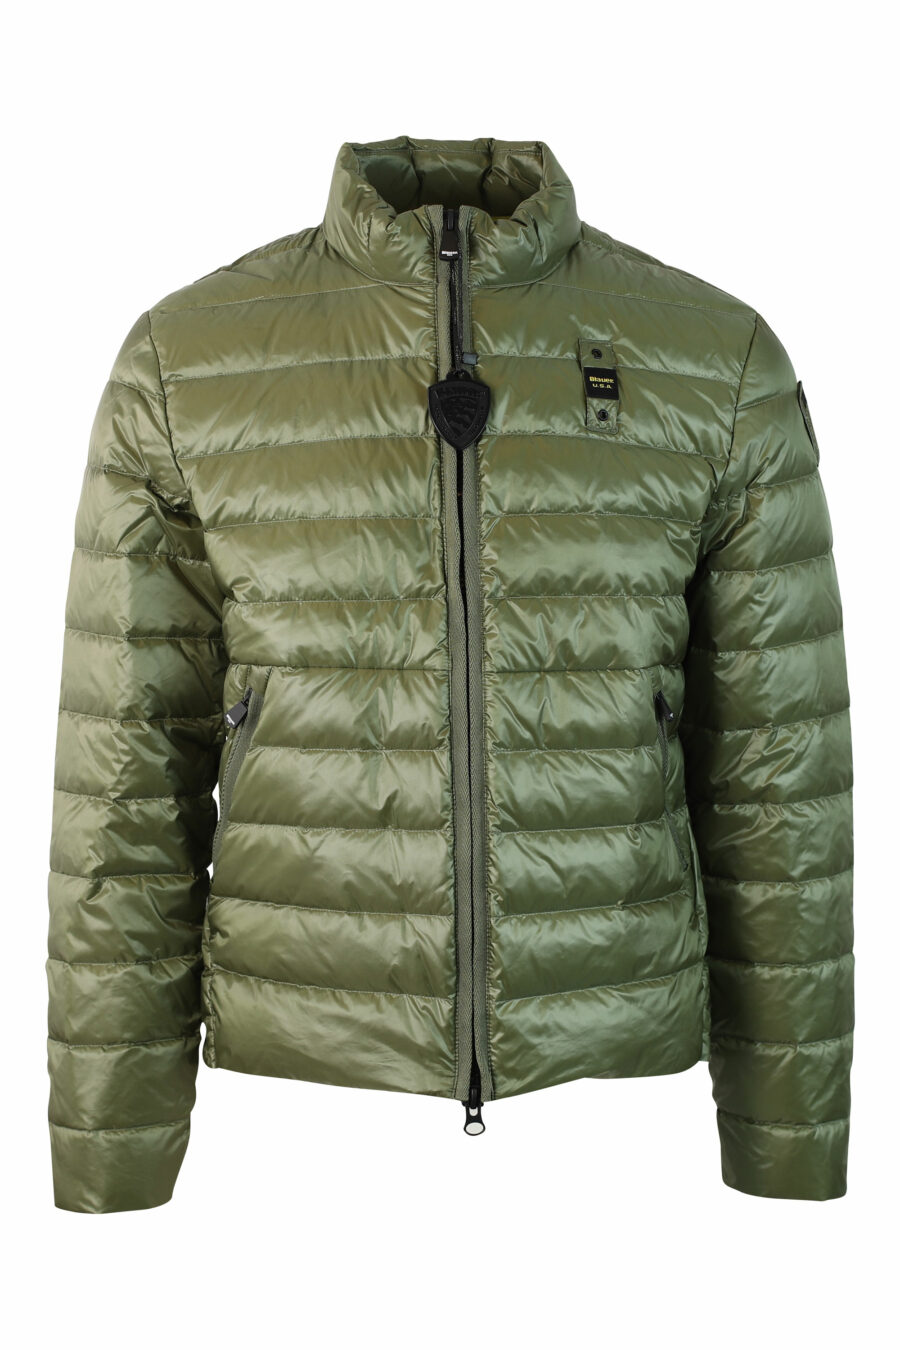 Hellgrüne Jacke mit geraden Linien und Aufnäher - IMG 9806